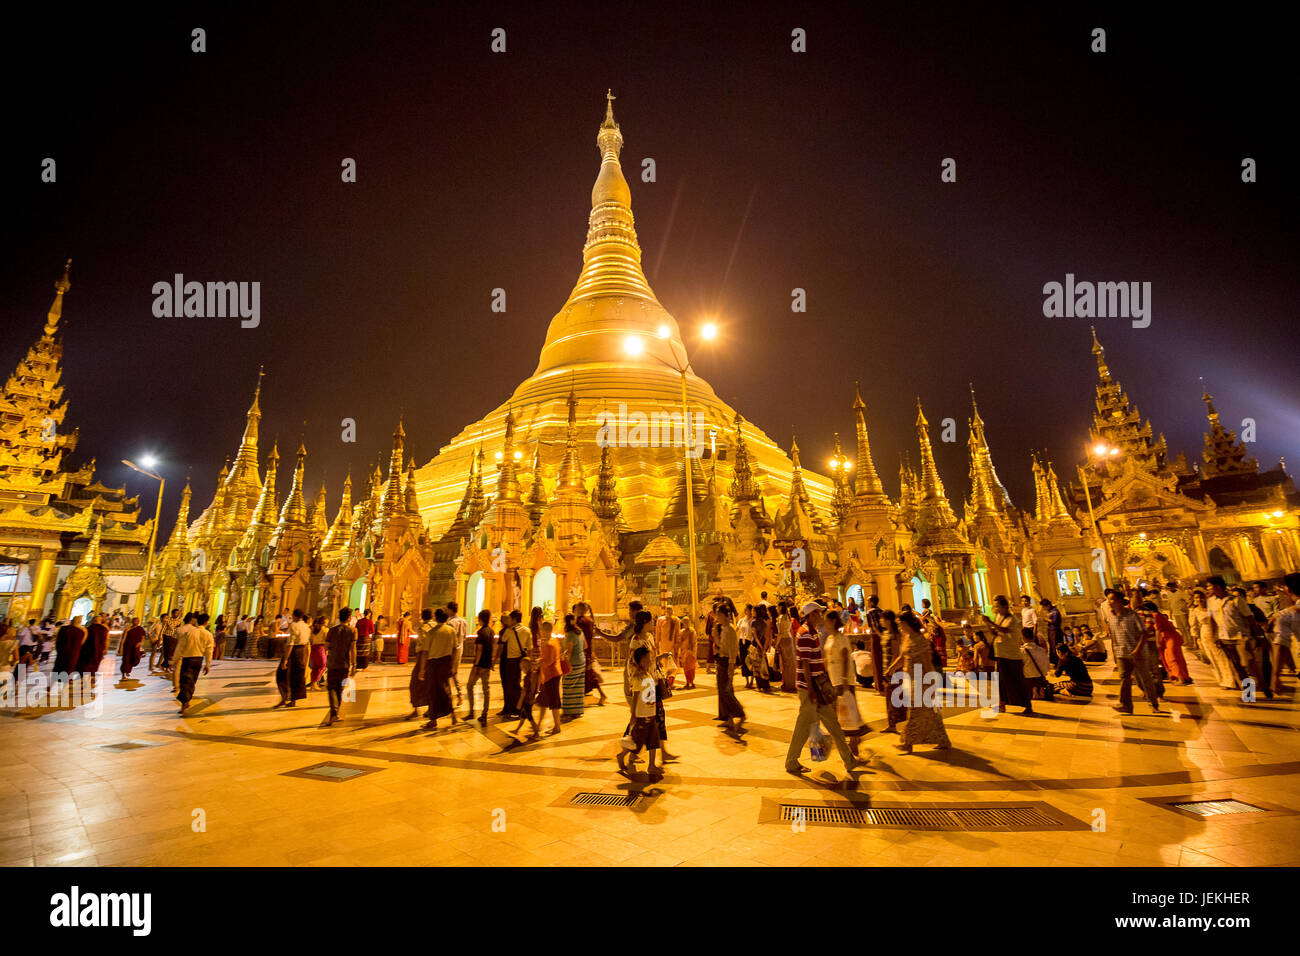 La Shwedagon pagoda - Shwedagon Zedi Daw - Grande Dagon Pagoda - Golden Pagoda stupa dorato Yangon Myanmar Foto Stock